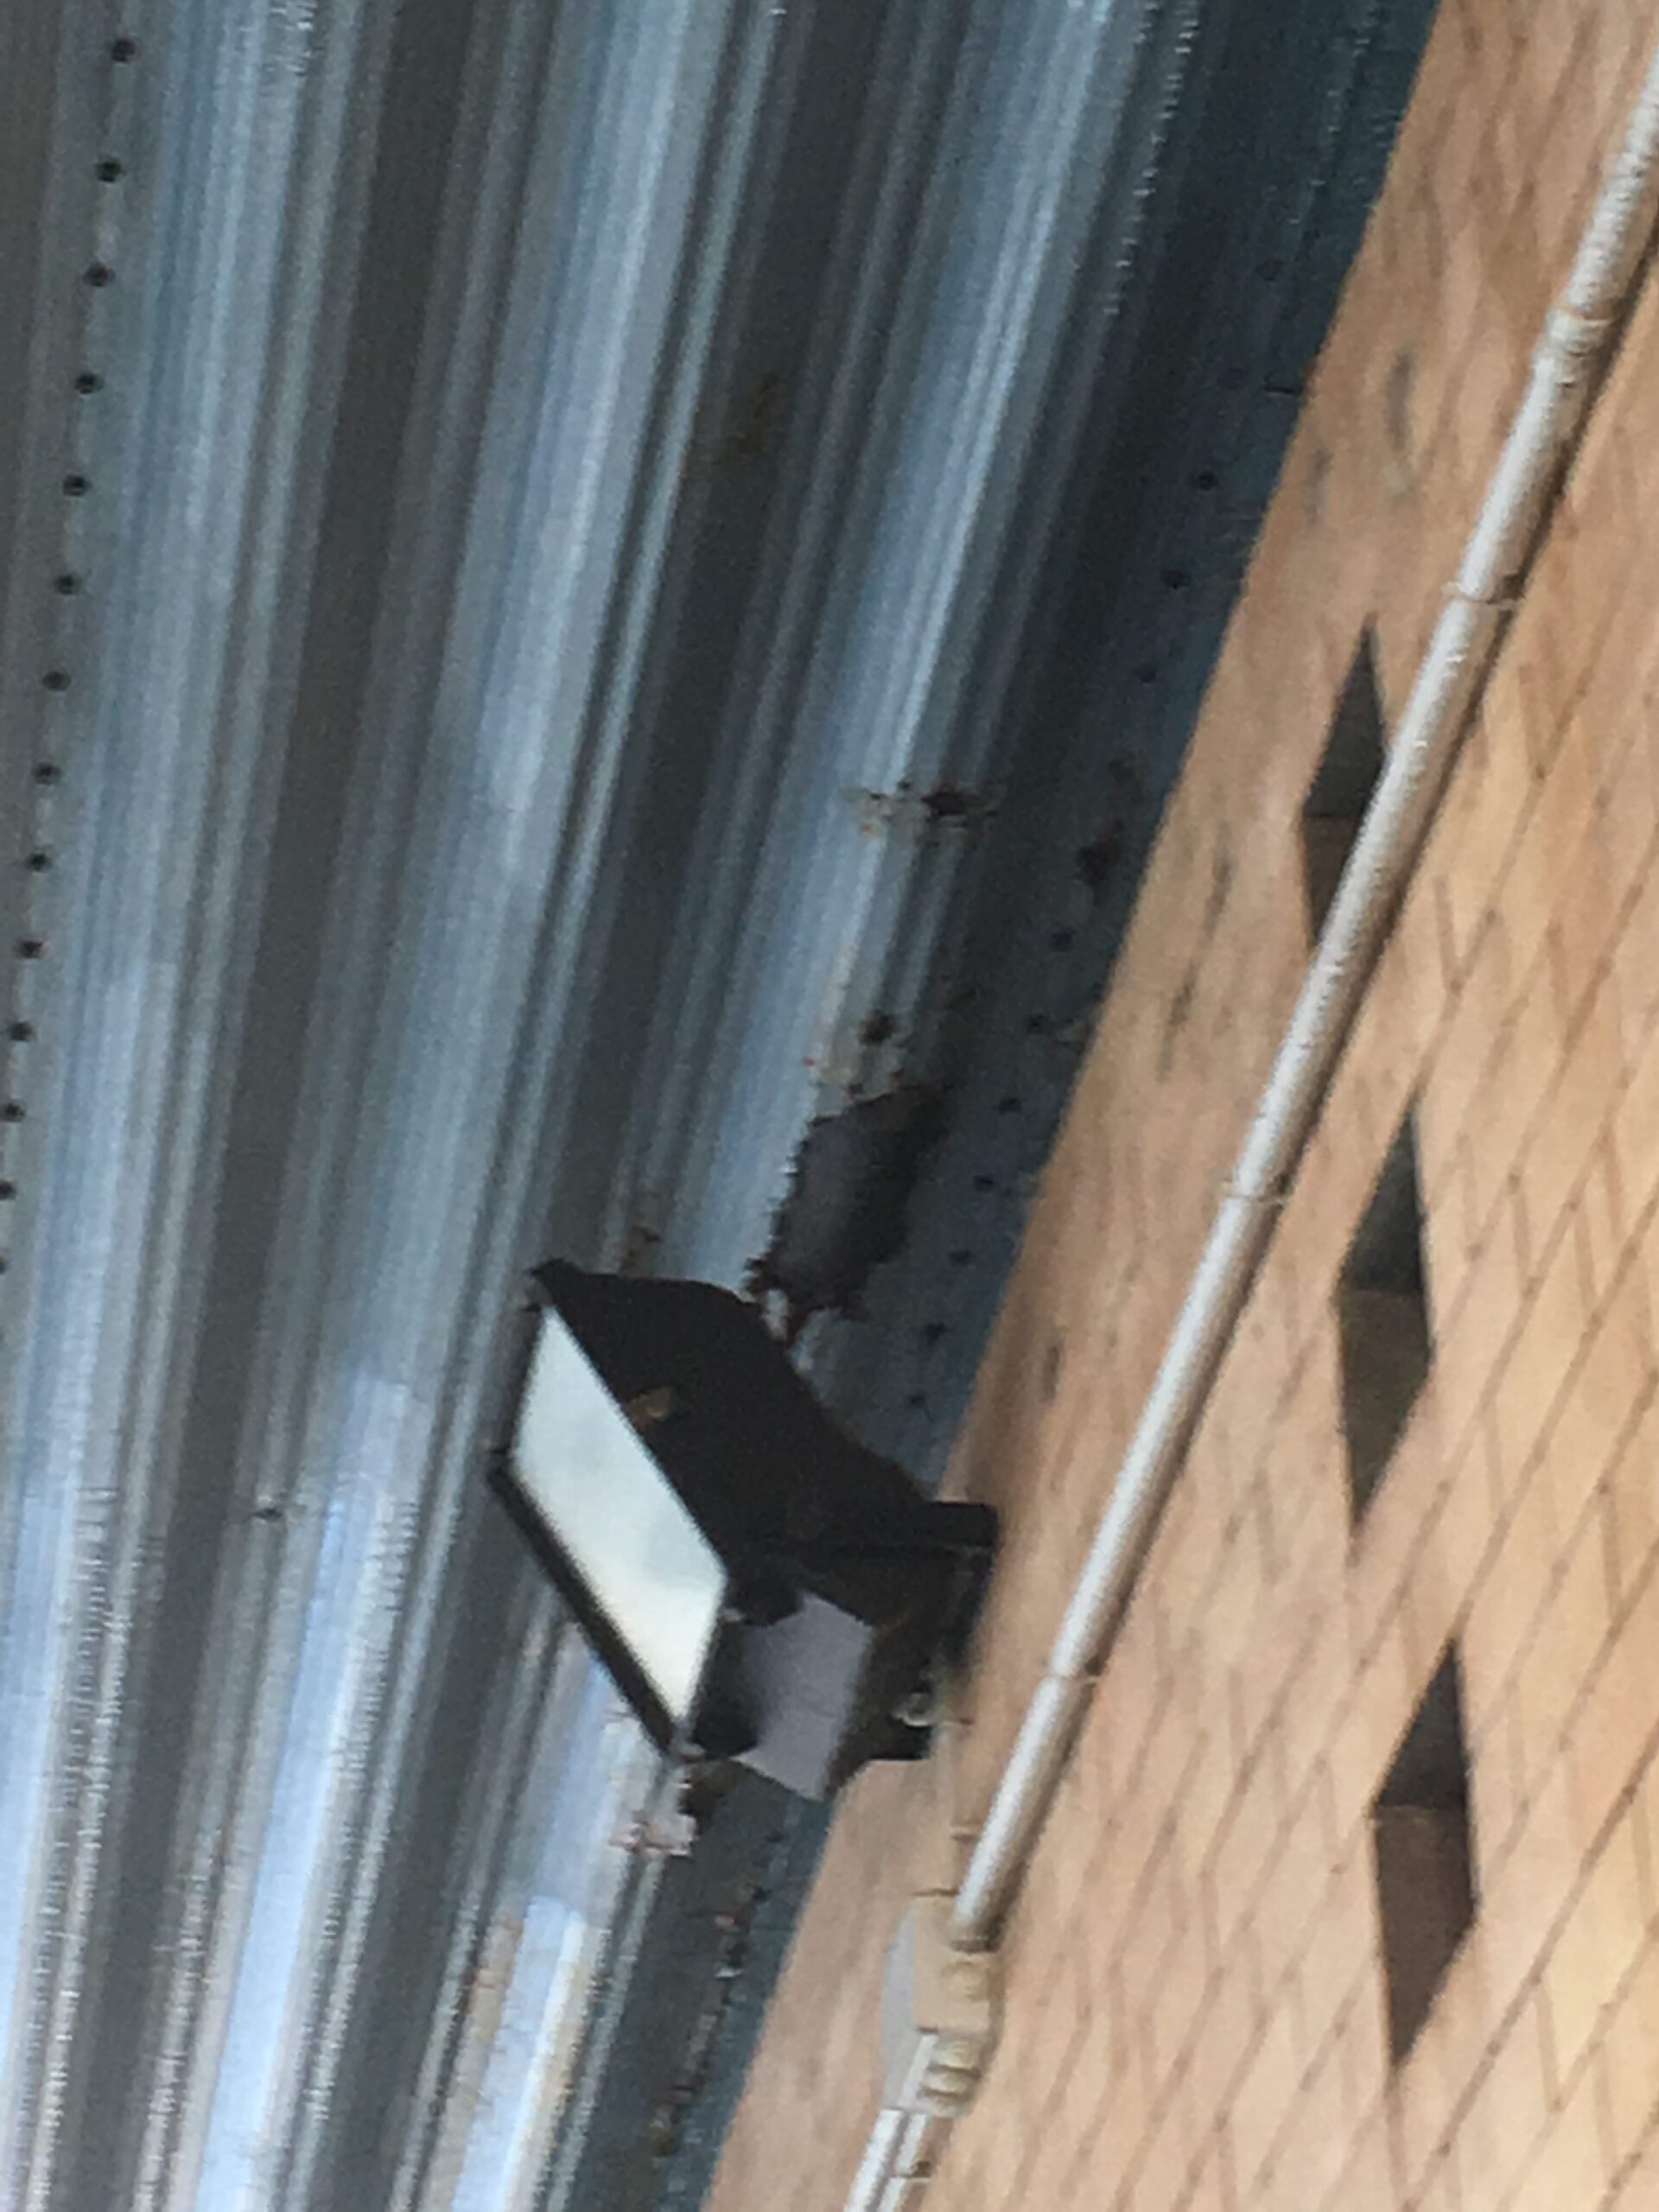 Piscina comunale di Latina: corrosione su lato interno tetto metallico